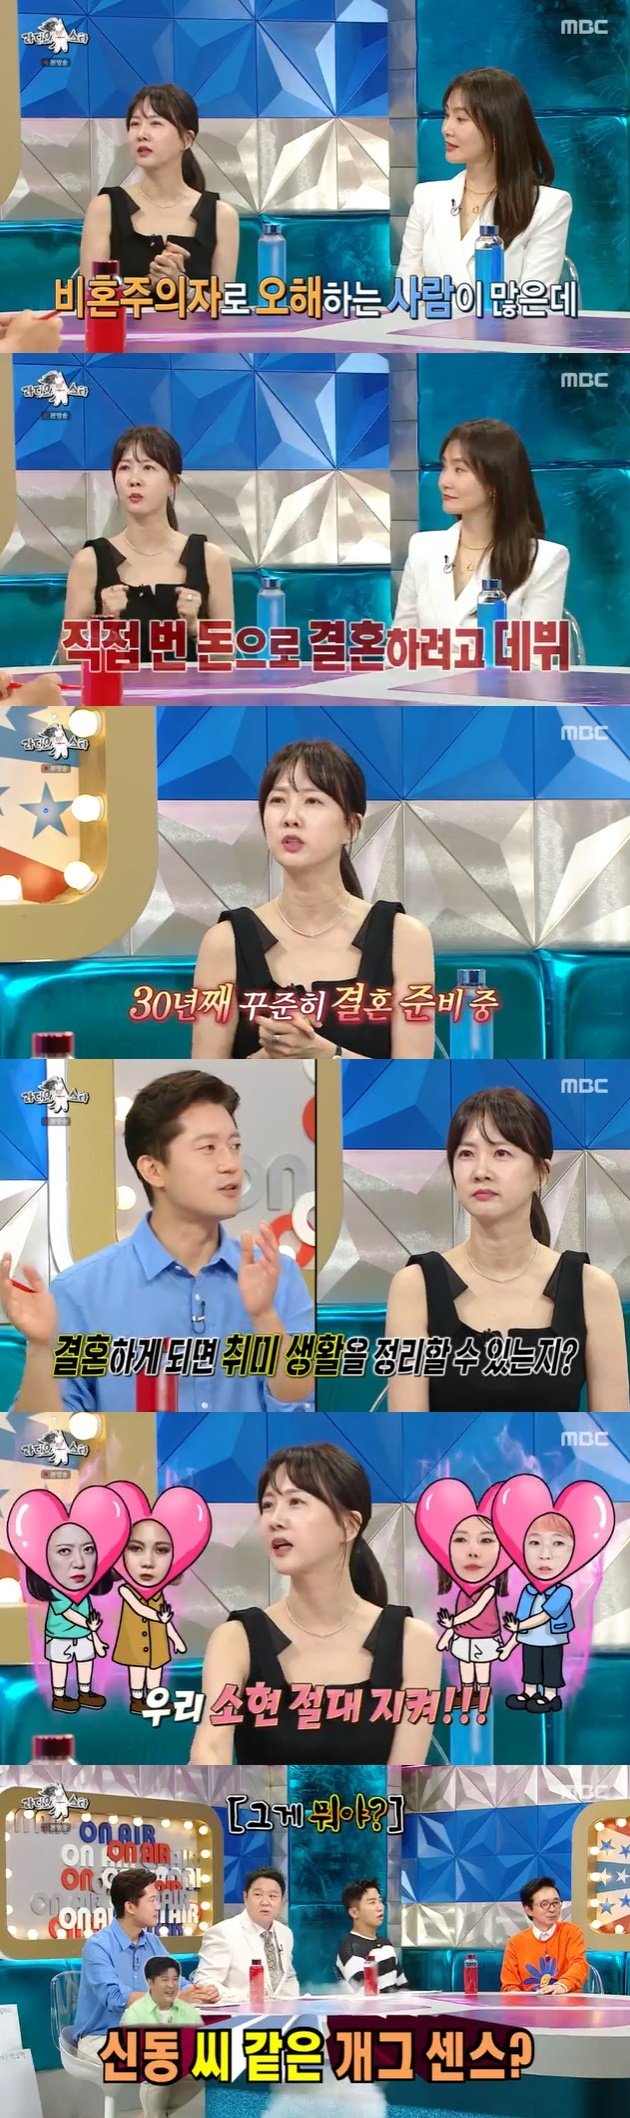 박소현 "비혼주의자 NO…연예계 데뷔한 이유도 결혼 때문" [RE:TV]